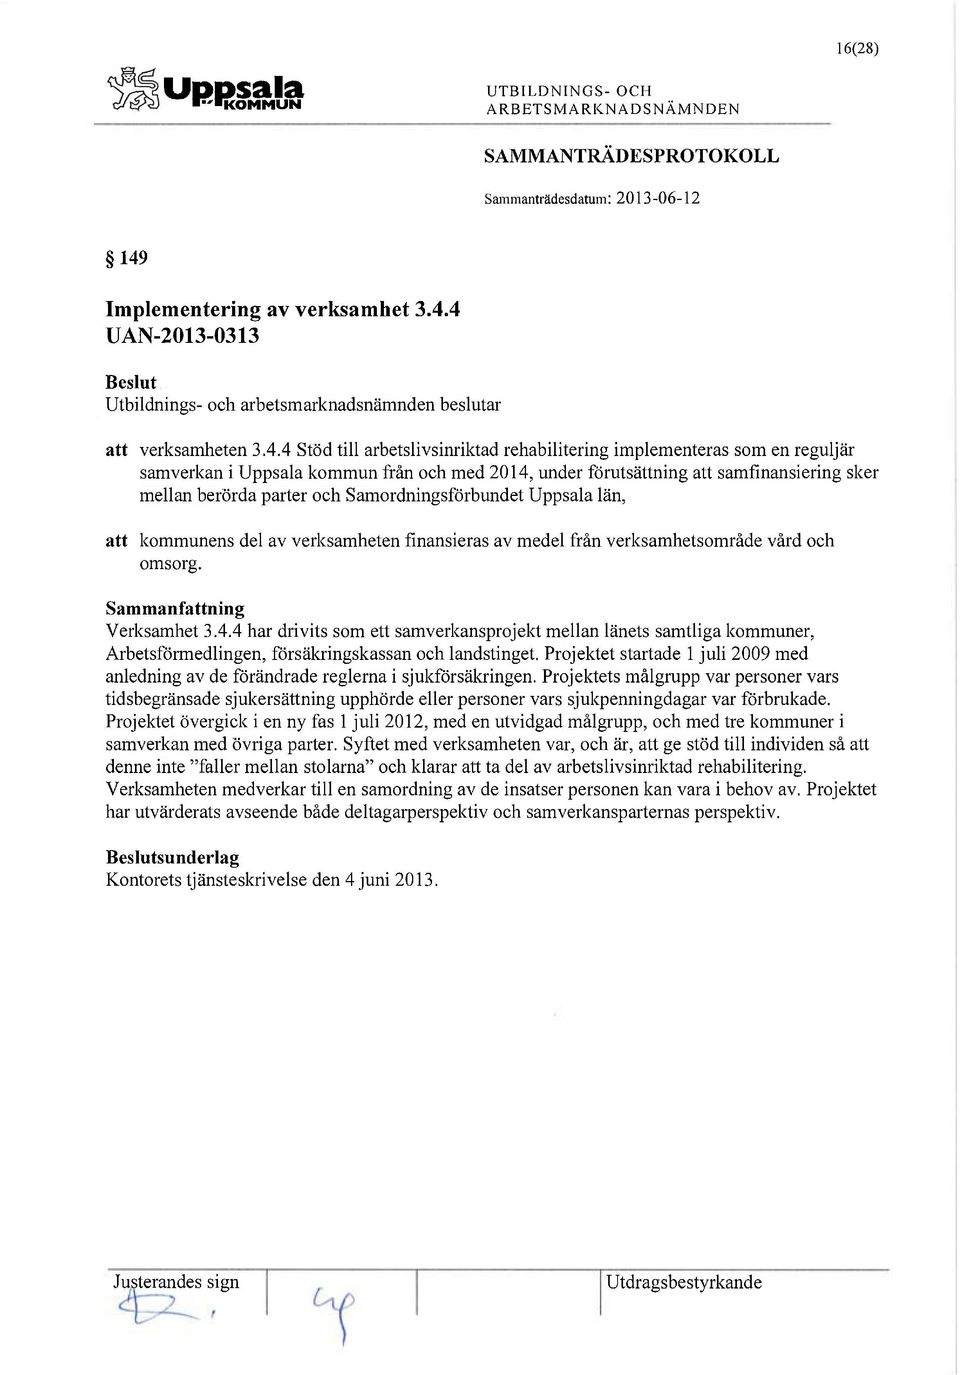 4 UAN-2013-0313 Utbildnings- och arbetsmarknadsnämnden beslutar att verksamheten 3.4.4 Stöd till arbetslivsinriktad rehabilitering implementeras som en reguljär samverkan i Uppsala kommun från och